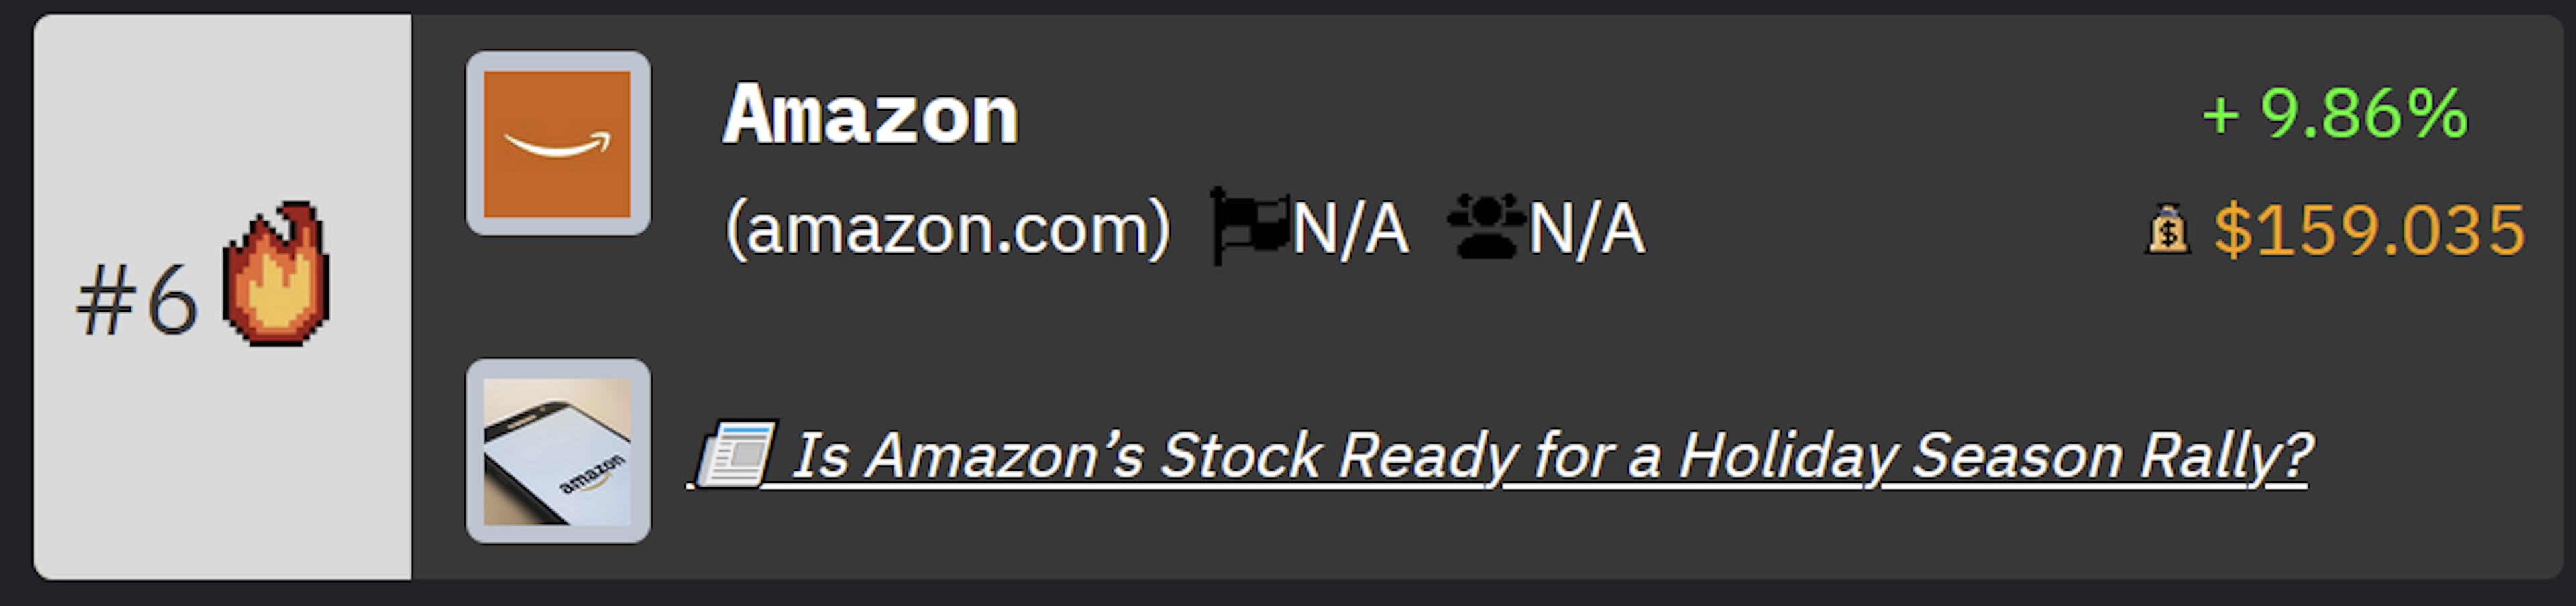 Amazon Rank on HackerNoon's Tech Company Rankings